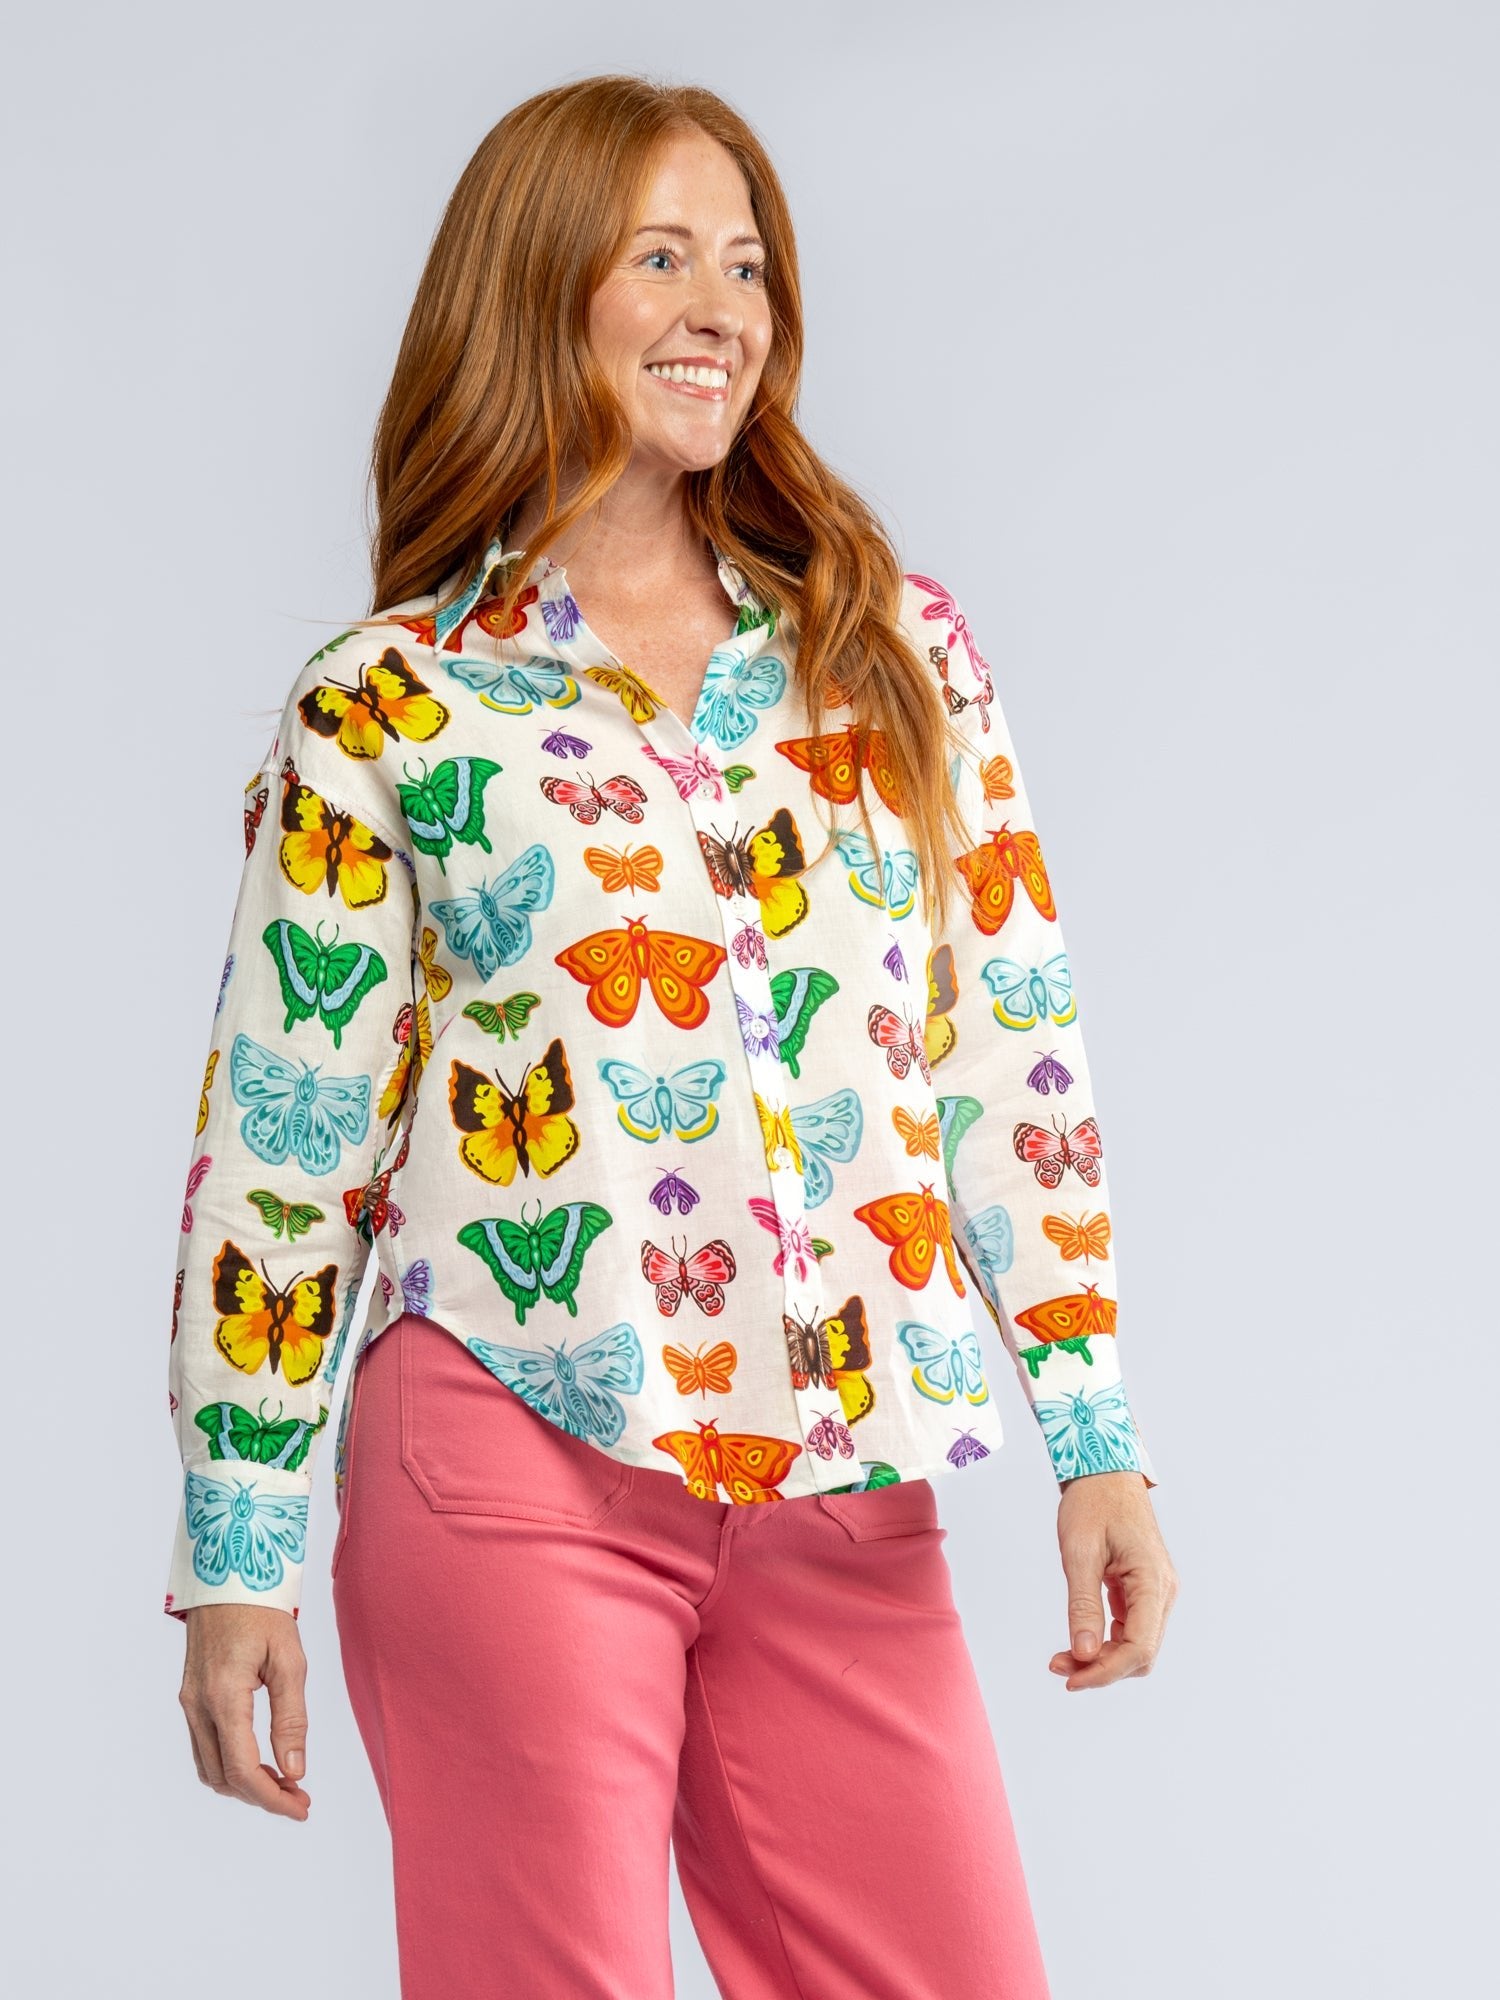 DAWN shirt Butterflies and Moths - Lesley Evers-Best Seller-blouse-butterflies